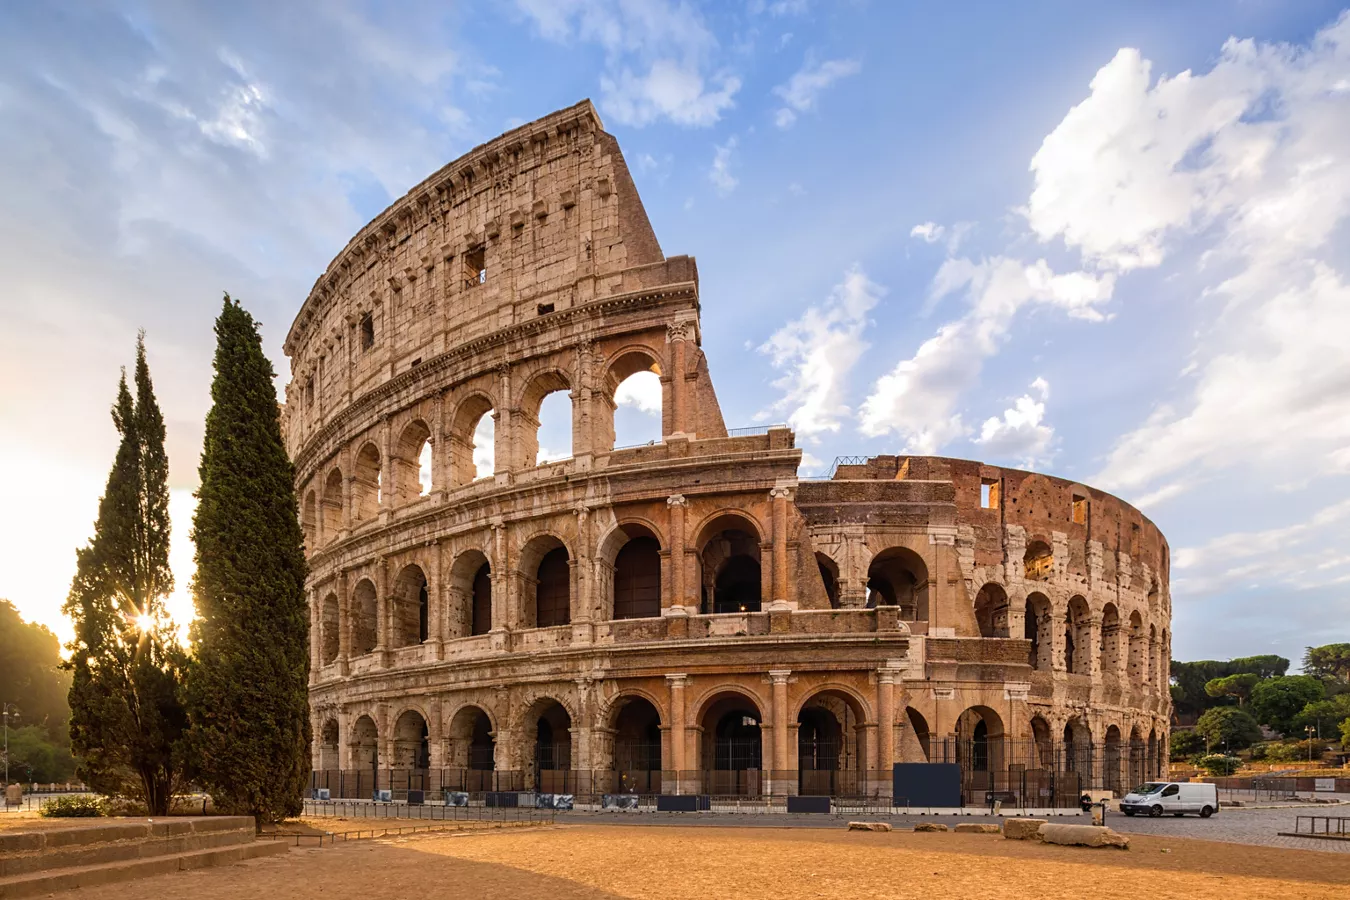 Vista del Colosseo